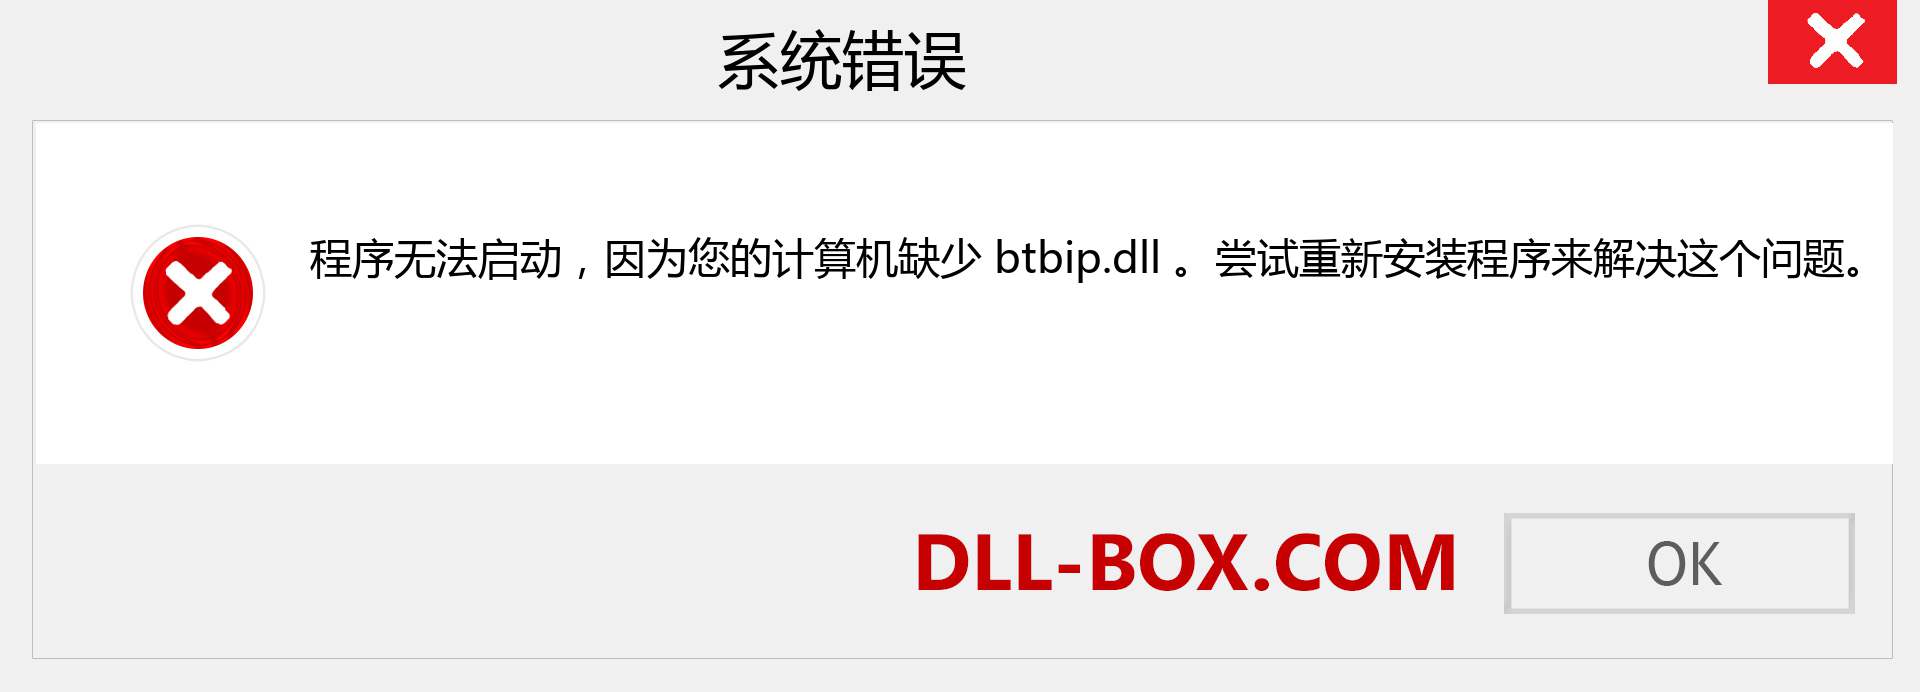 btbip.dll 文件丢失？。 适用于 Windows 7、8、10 的下载 - 修复 Windows、照片、图像上的 btbip dll 丢失错误